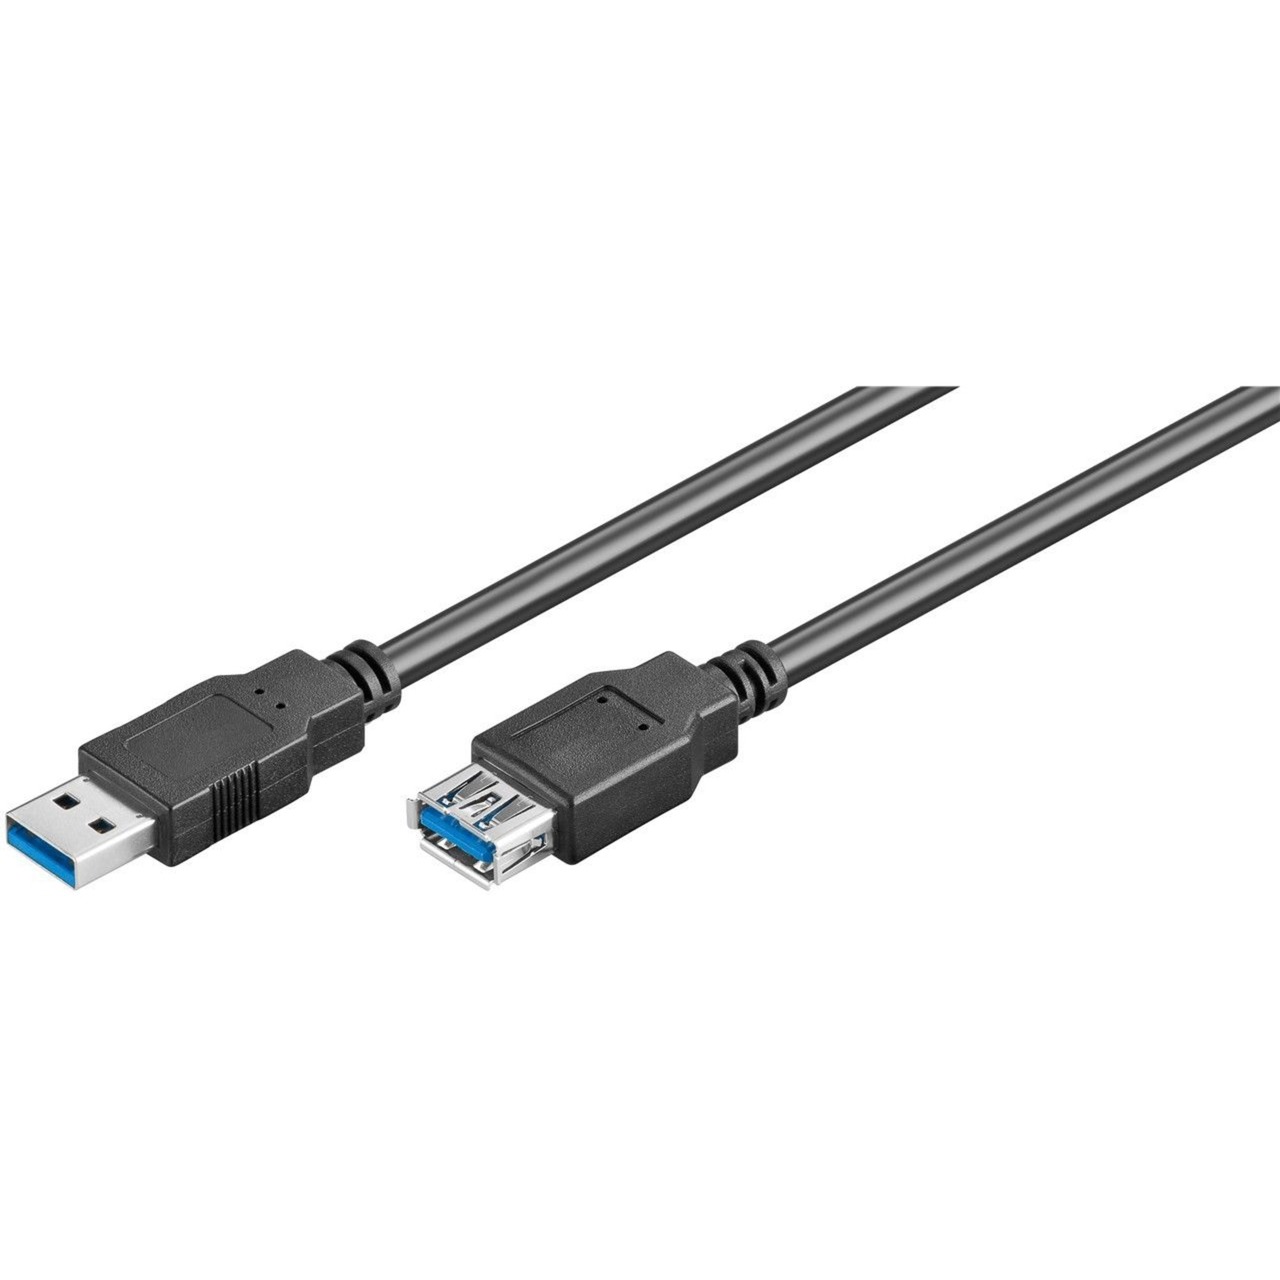 Image of Alternate - USB 3.0 SuperSpeed Verlängerungskabel online einkaufen bei Alternate